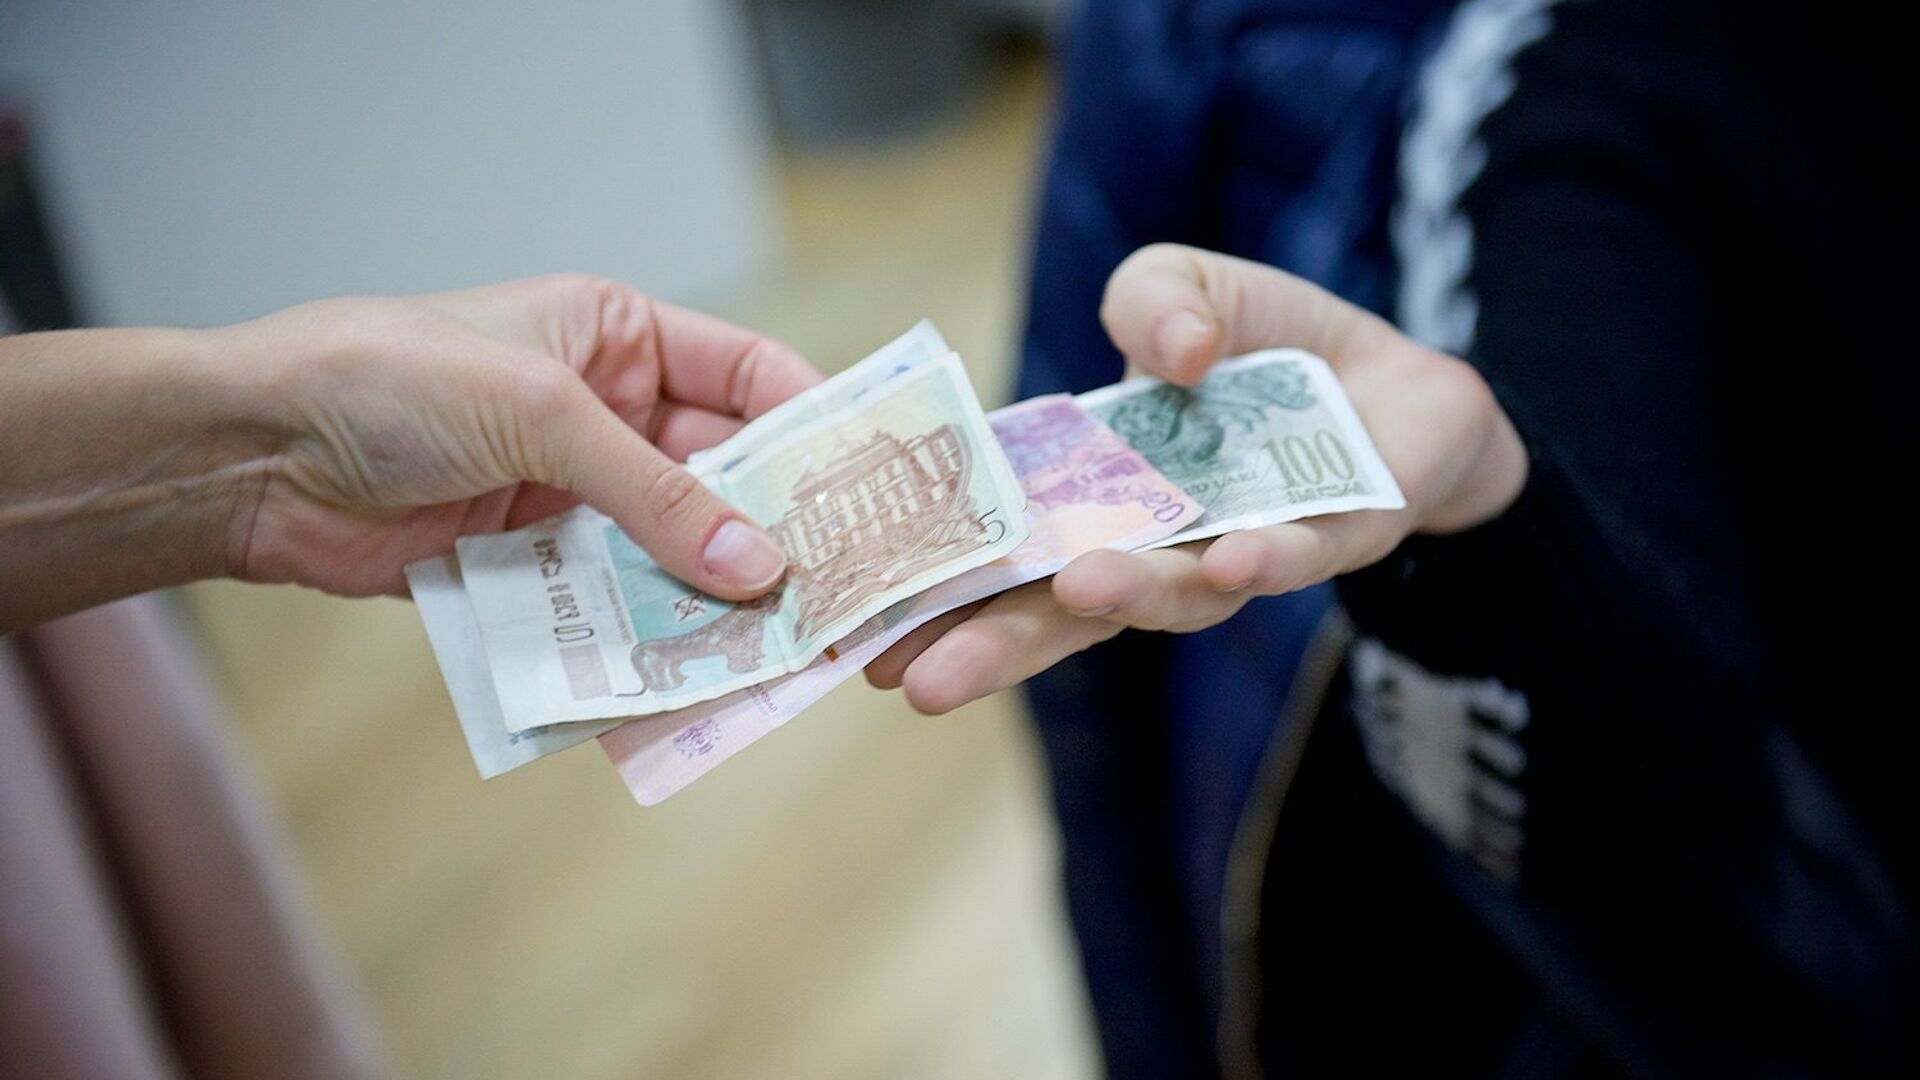 Люди передают друг другу купюры грузинской валюты лари различного номинала - Sputnik Грузия, 1920, 31.12.2021